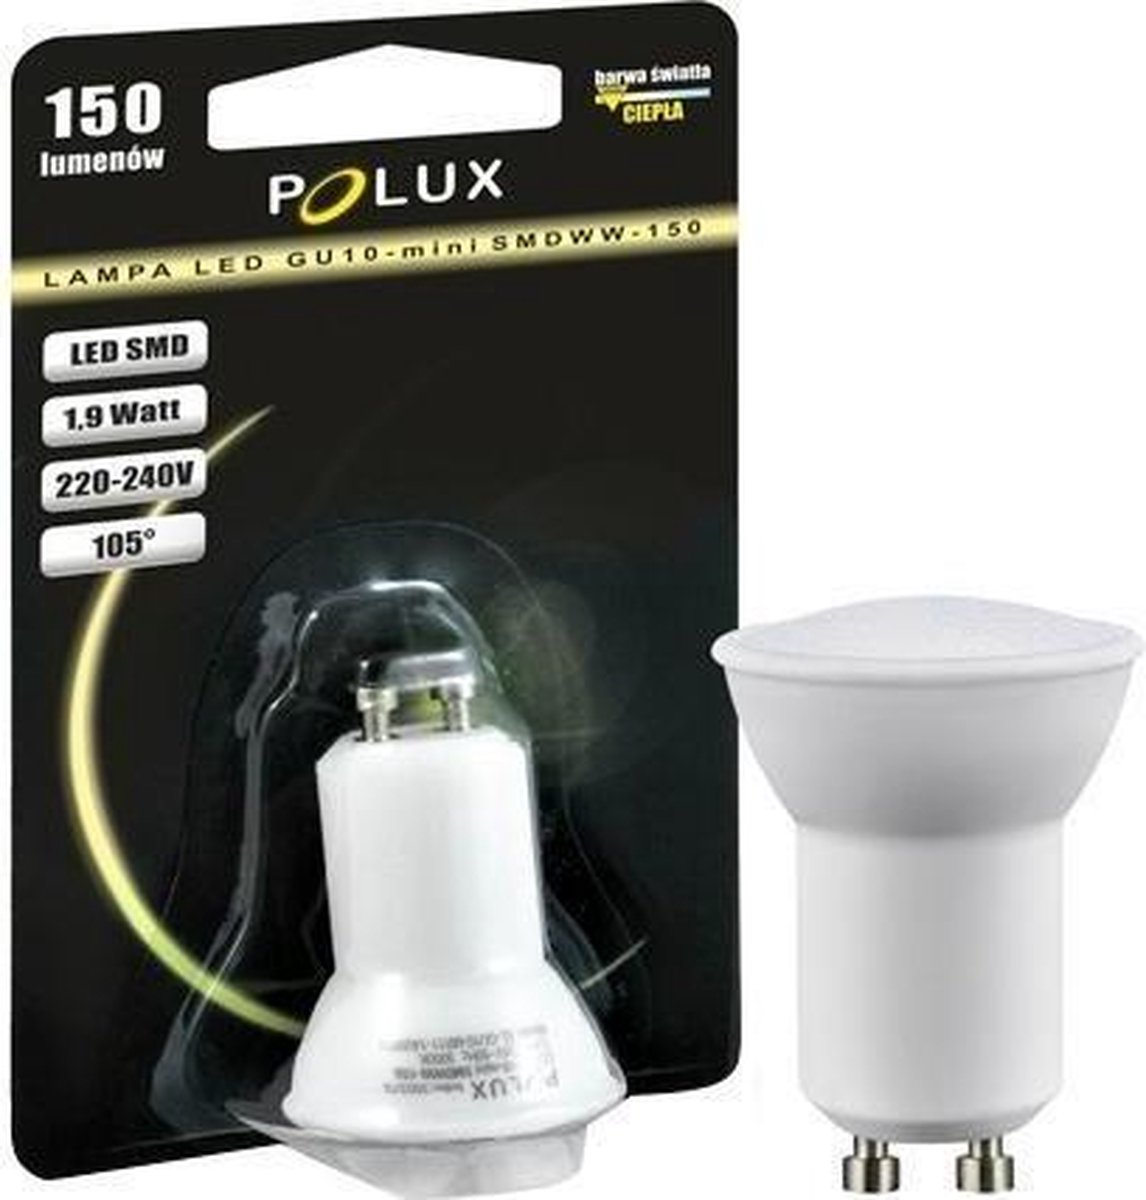 LED Mini GU10 - Blanc CHAUD - (35mm) 150 lumens - 1.9 watts - Polux |  bol.com